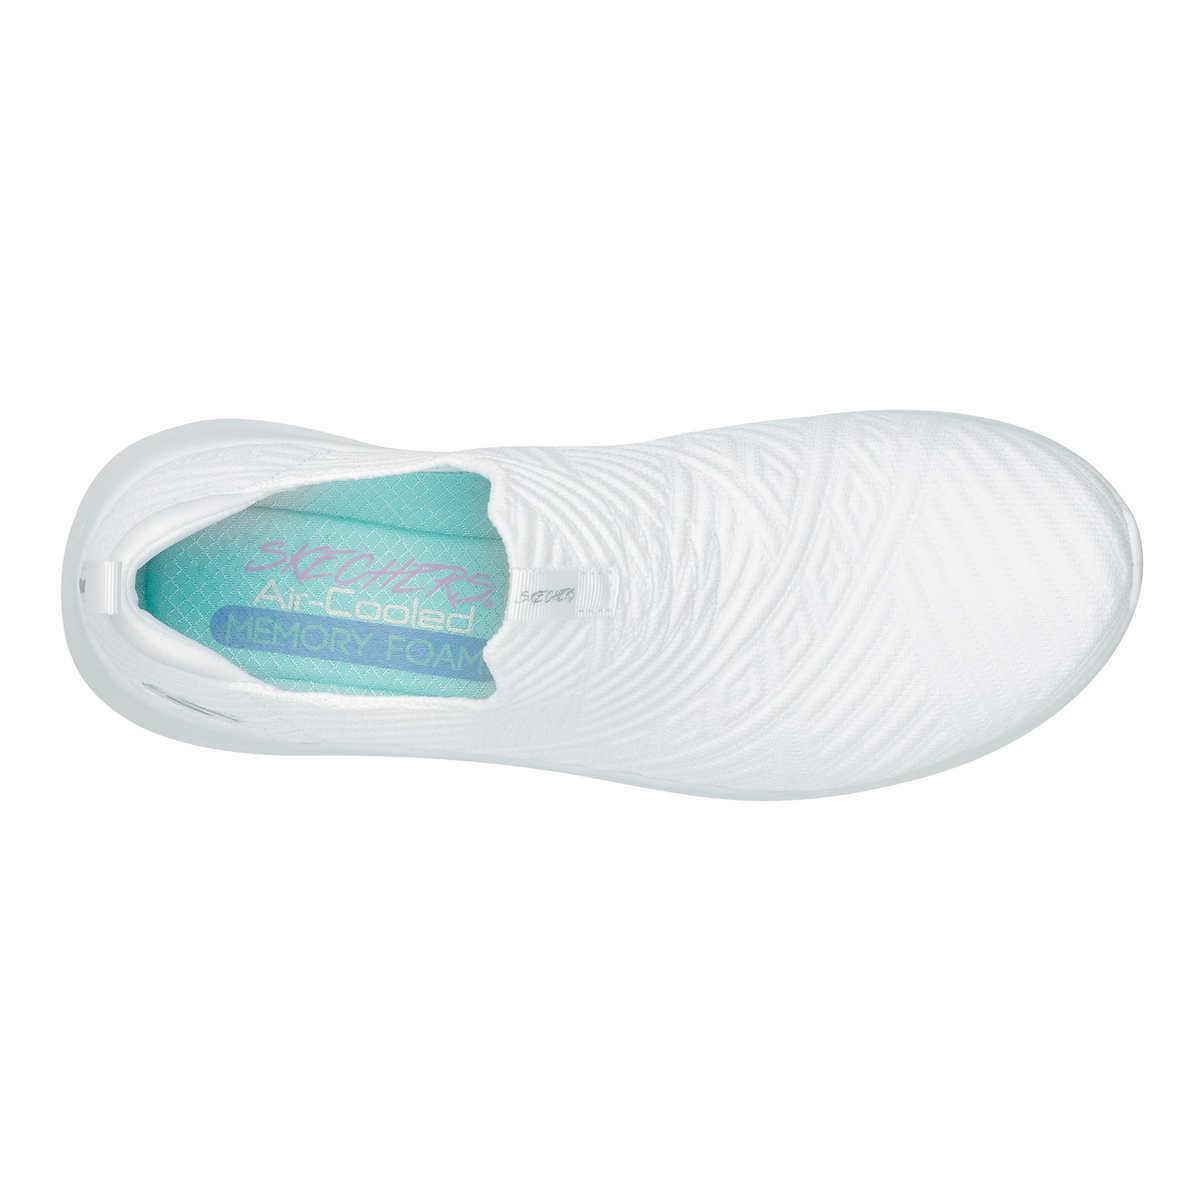 Skechers shoes Ultra Comfort 18